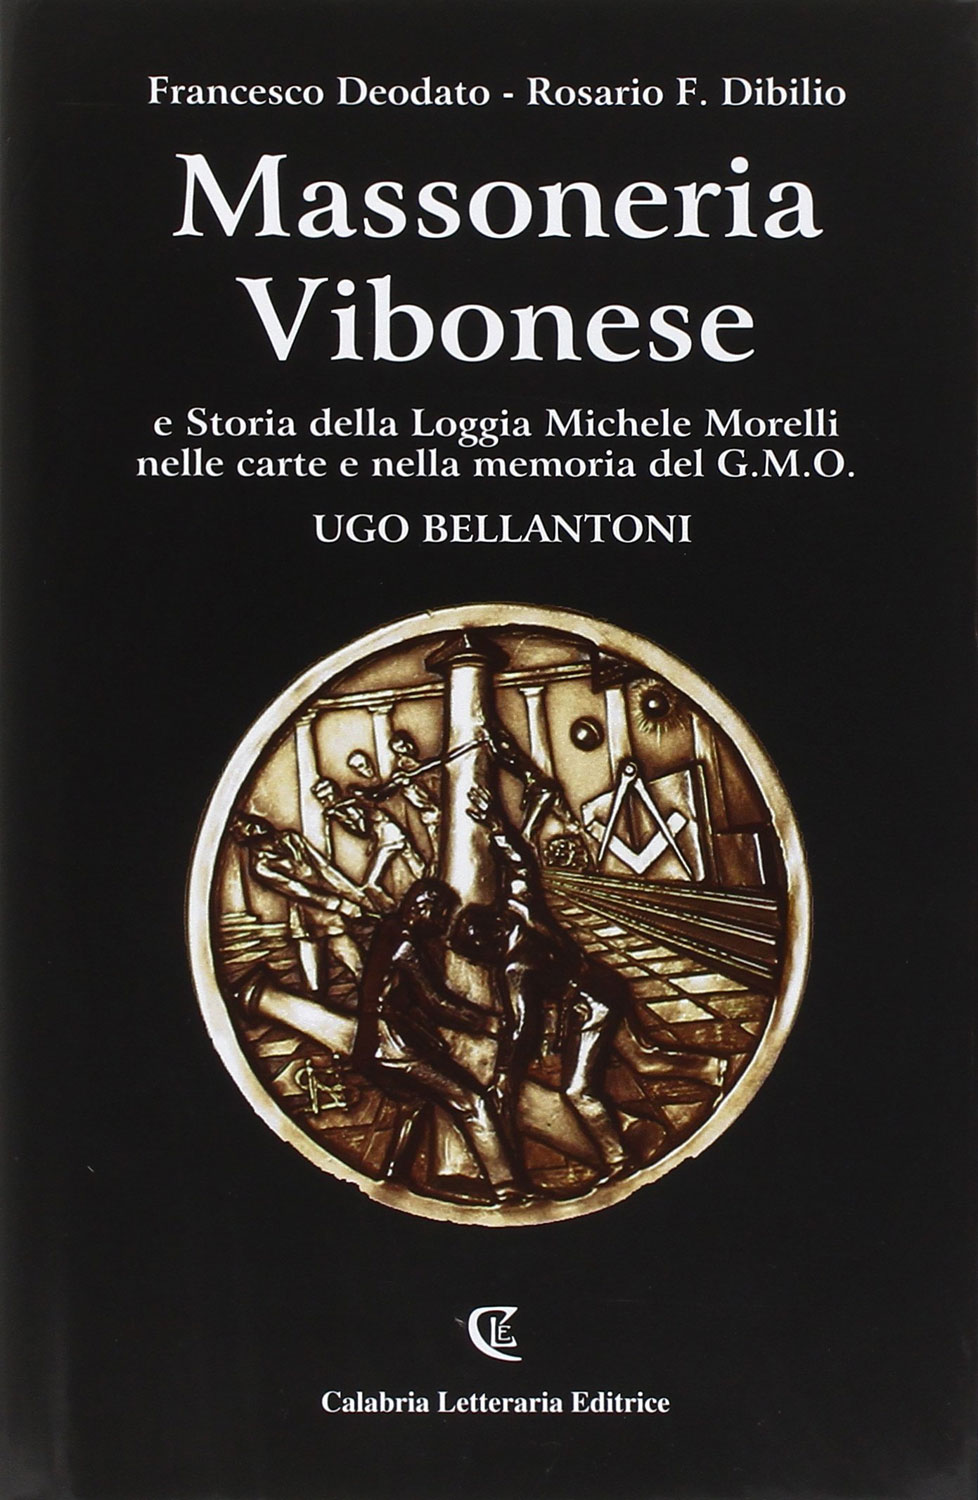 Libri Francesco Deodato - Massoneria Vibonese NUOVO SIGILLATO, EDIZIONE DEL 20/05/2016 SUBITO DISPONIBILE